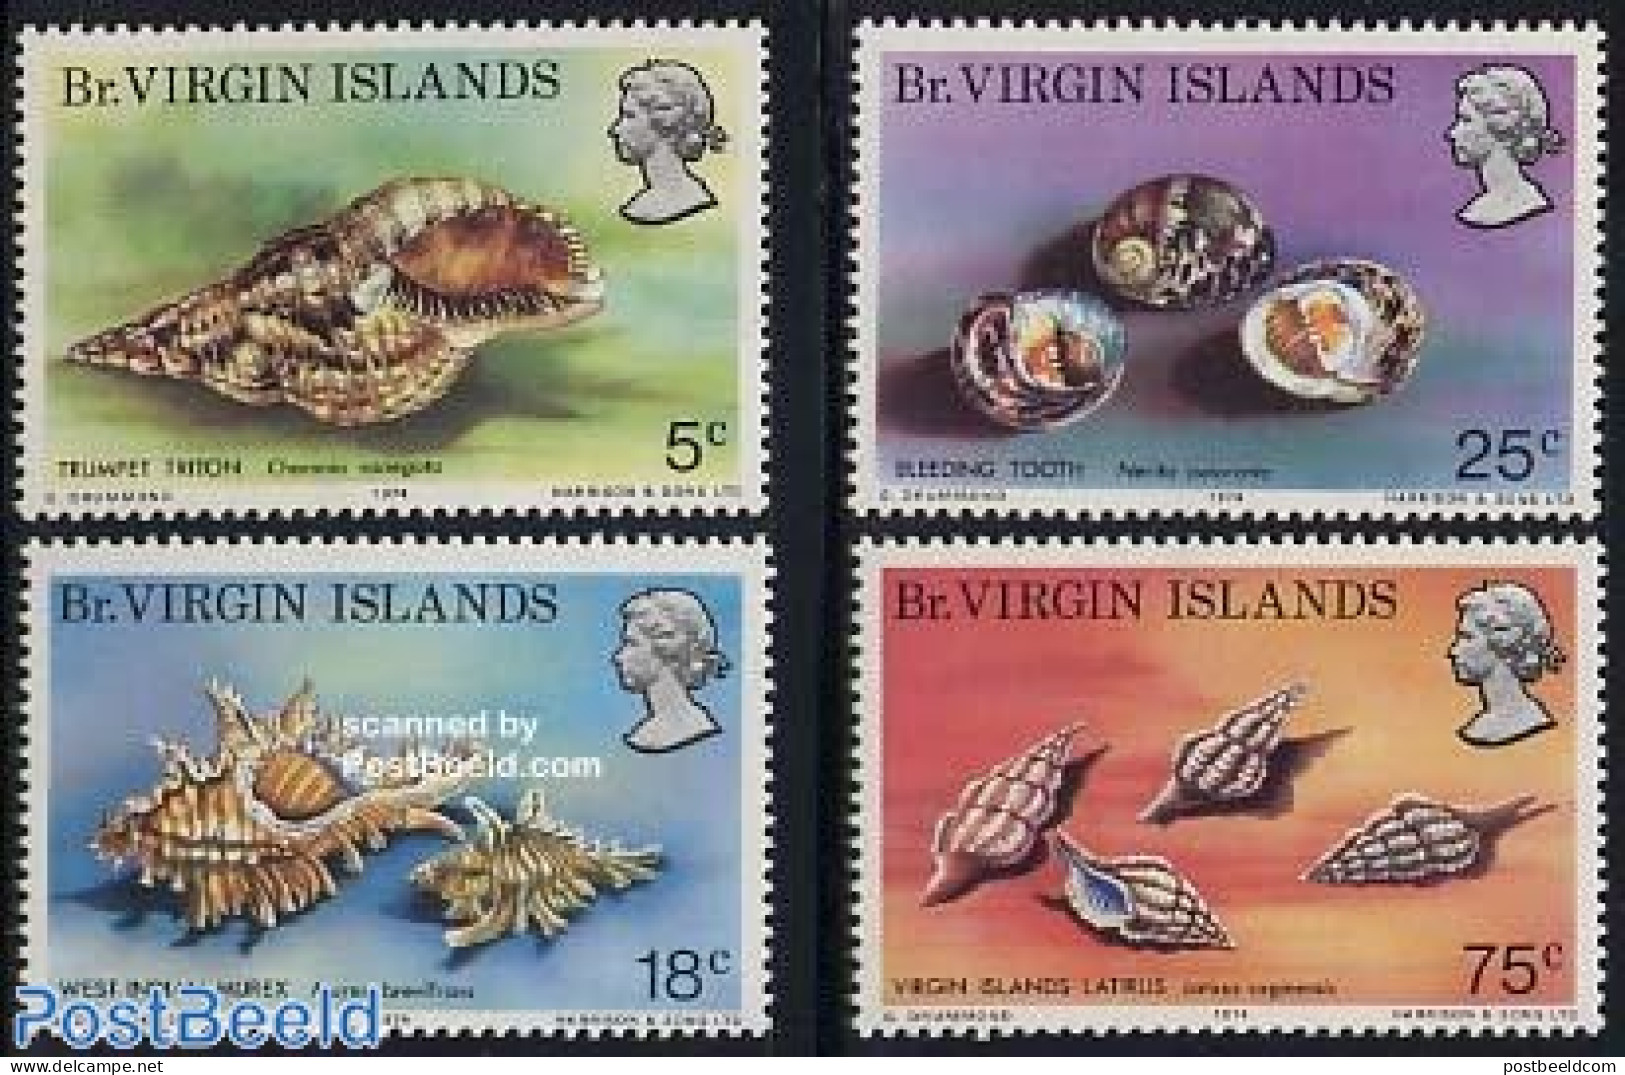 Virgin Islands 1974 Shells 4v, Mint NH, Nature - Shells & Crustaceans - Marine Life